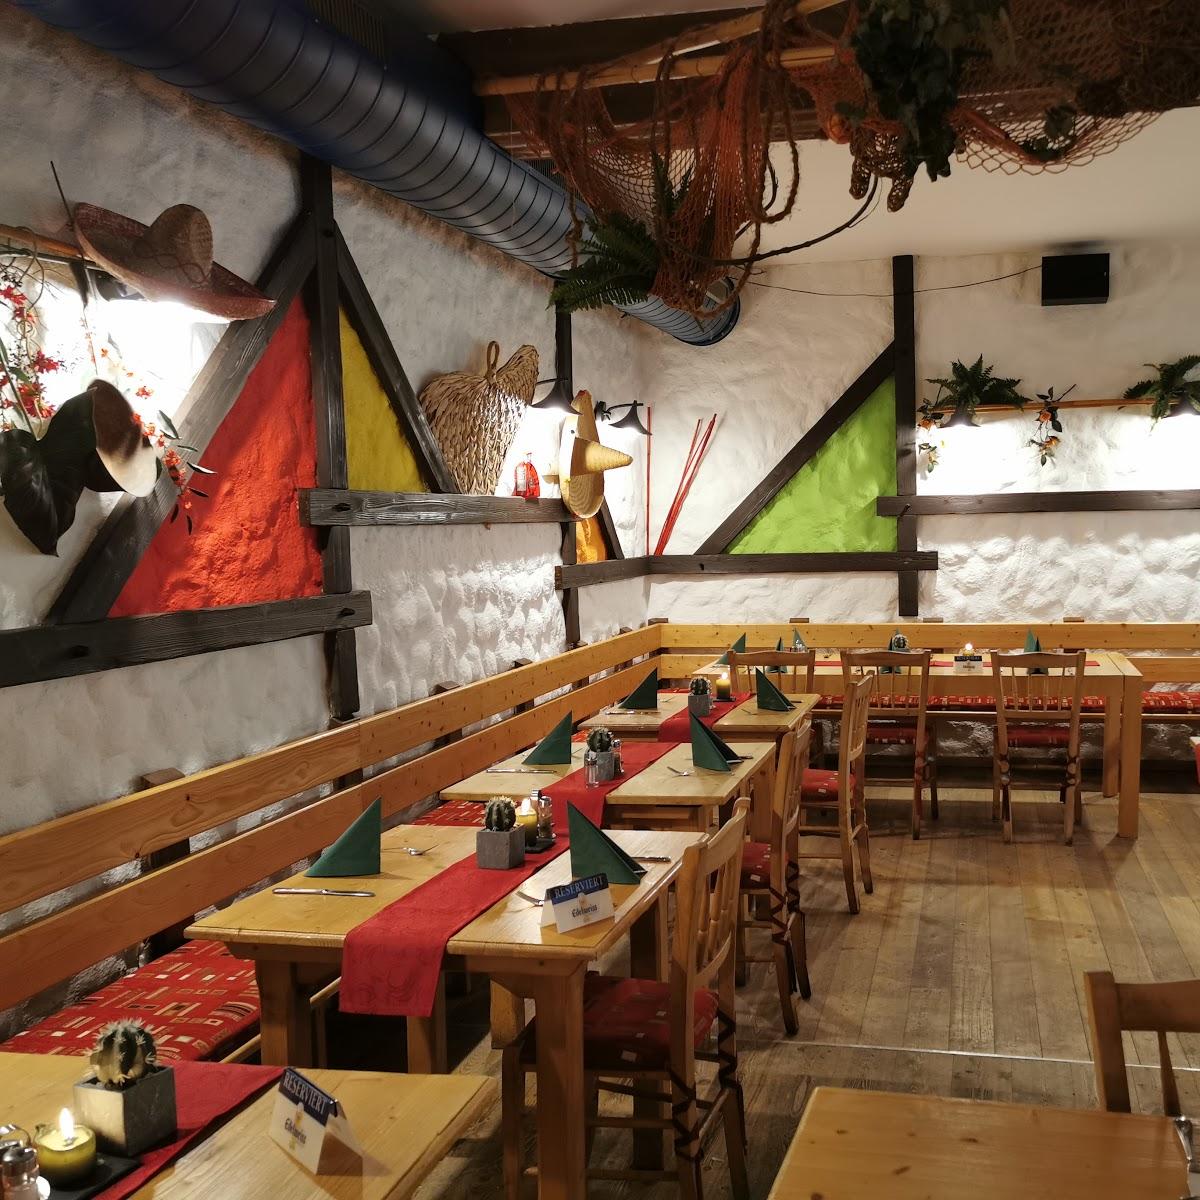 Restaurant "Tex-Mex Restaurant" in Steyr